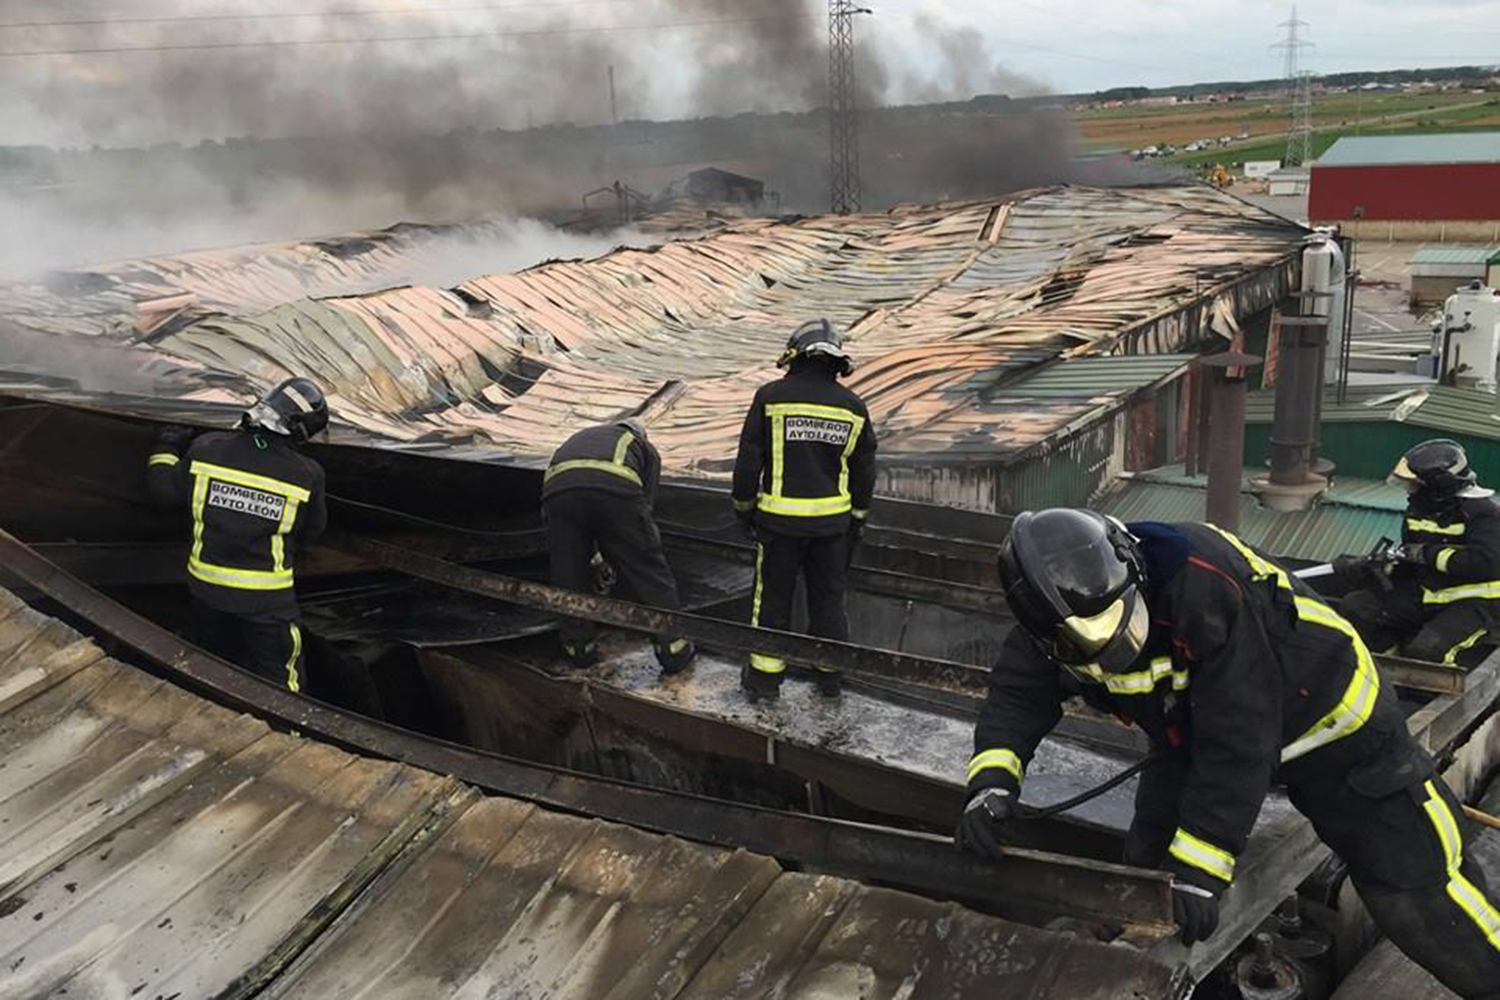 Futuro incierto para las 250 familias que trabajan en la fábrica de embutidos de León arrasada por las llamas